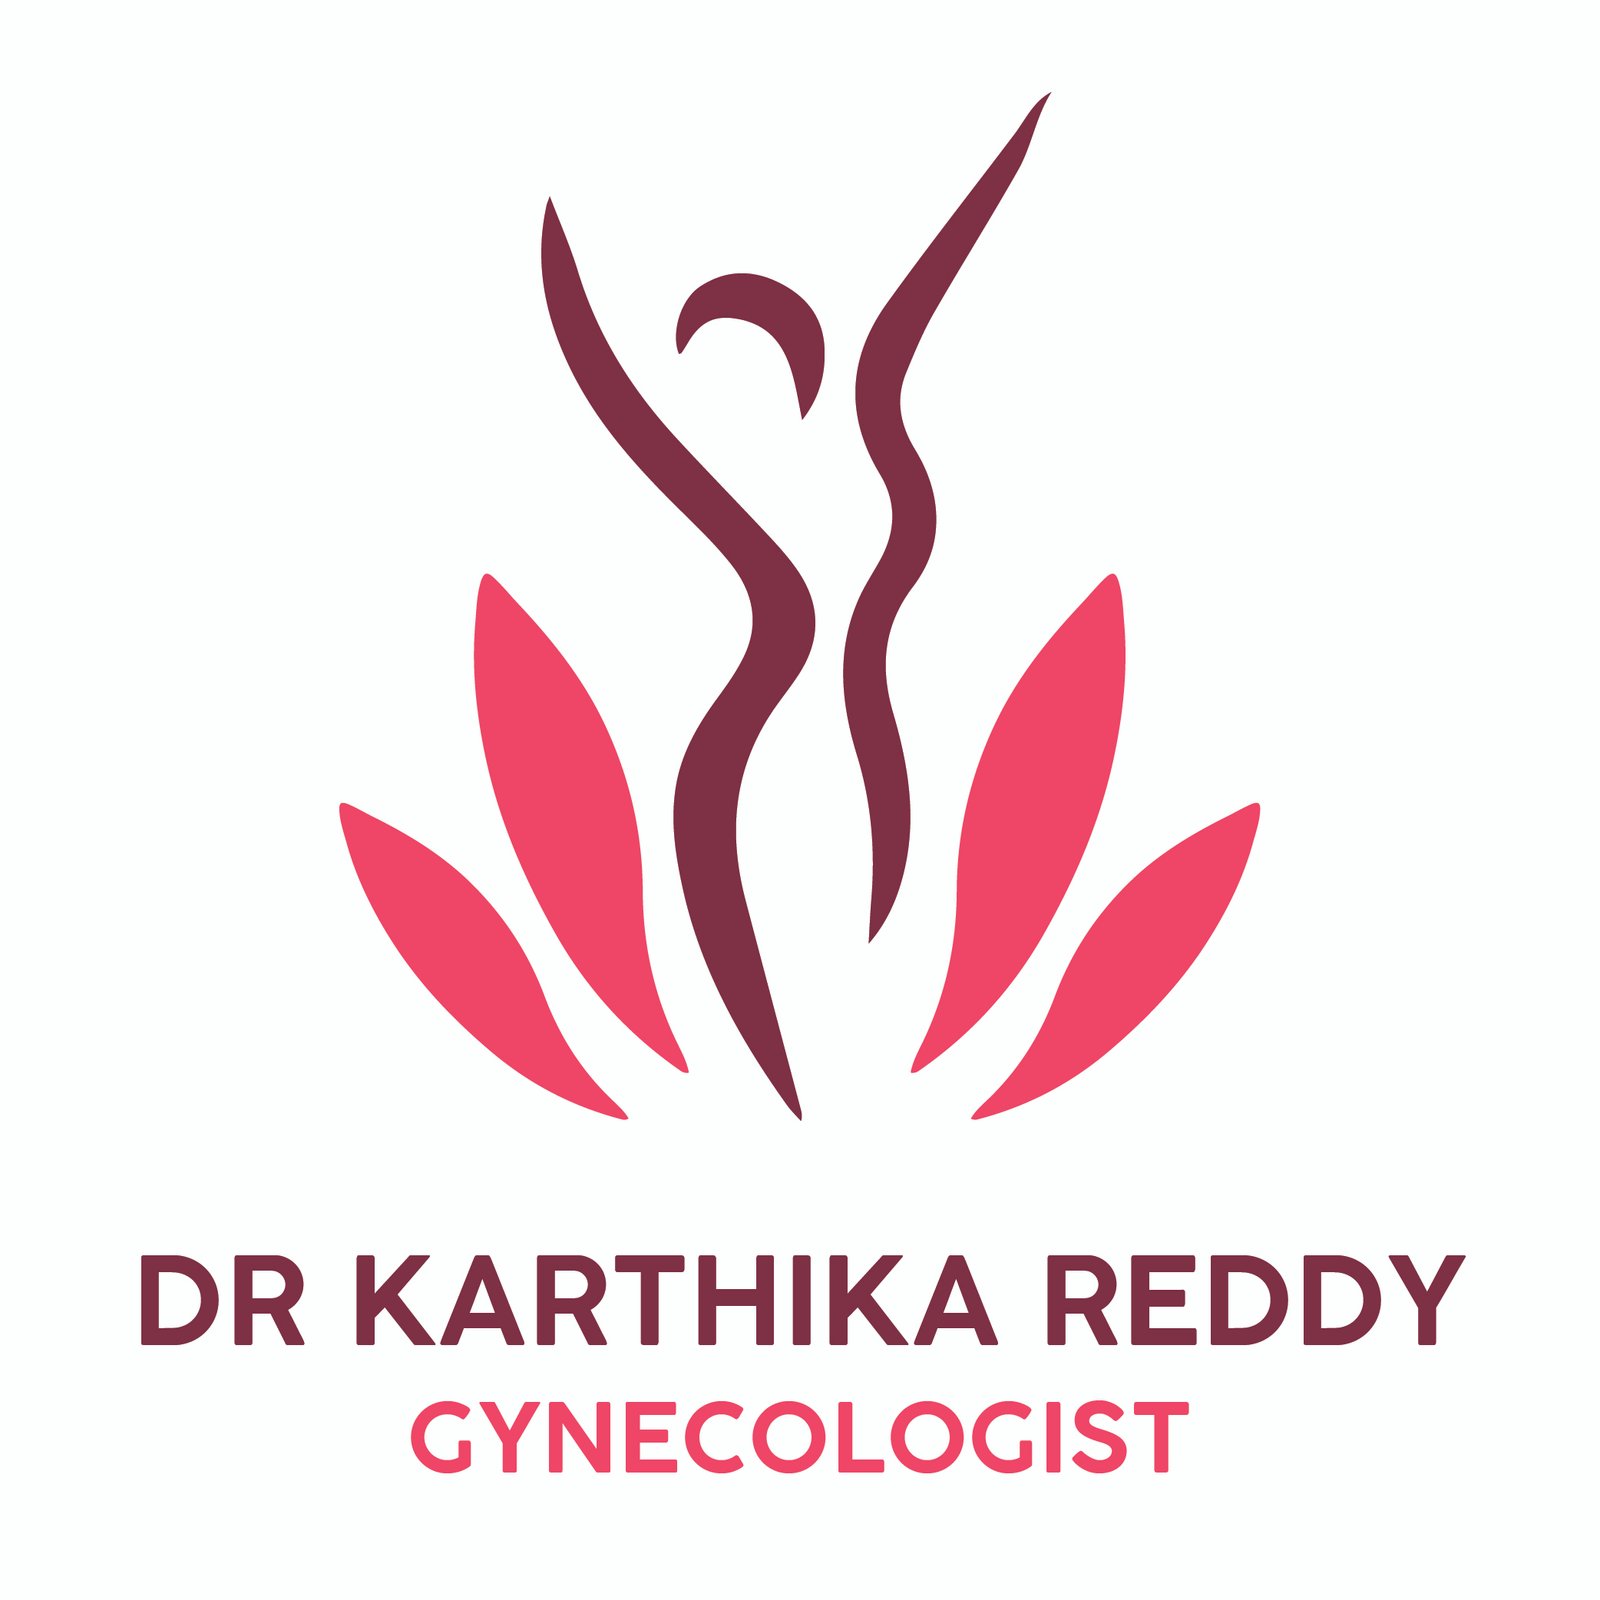 Dr. Karthika Reddy